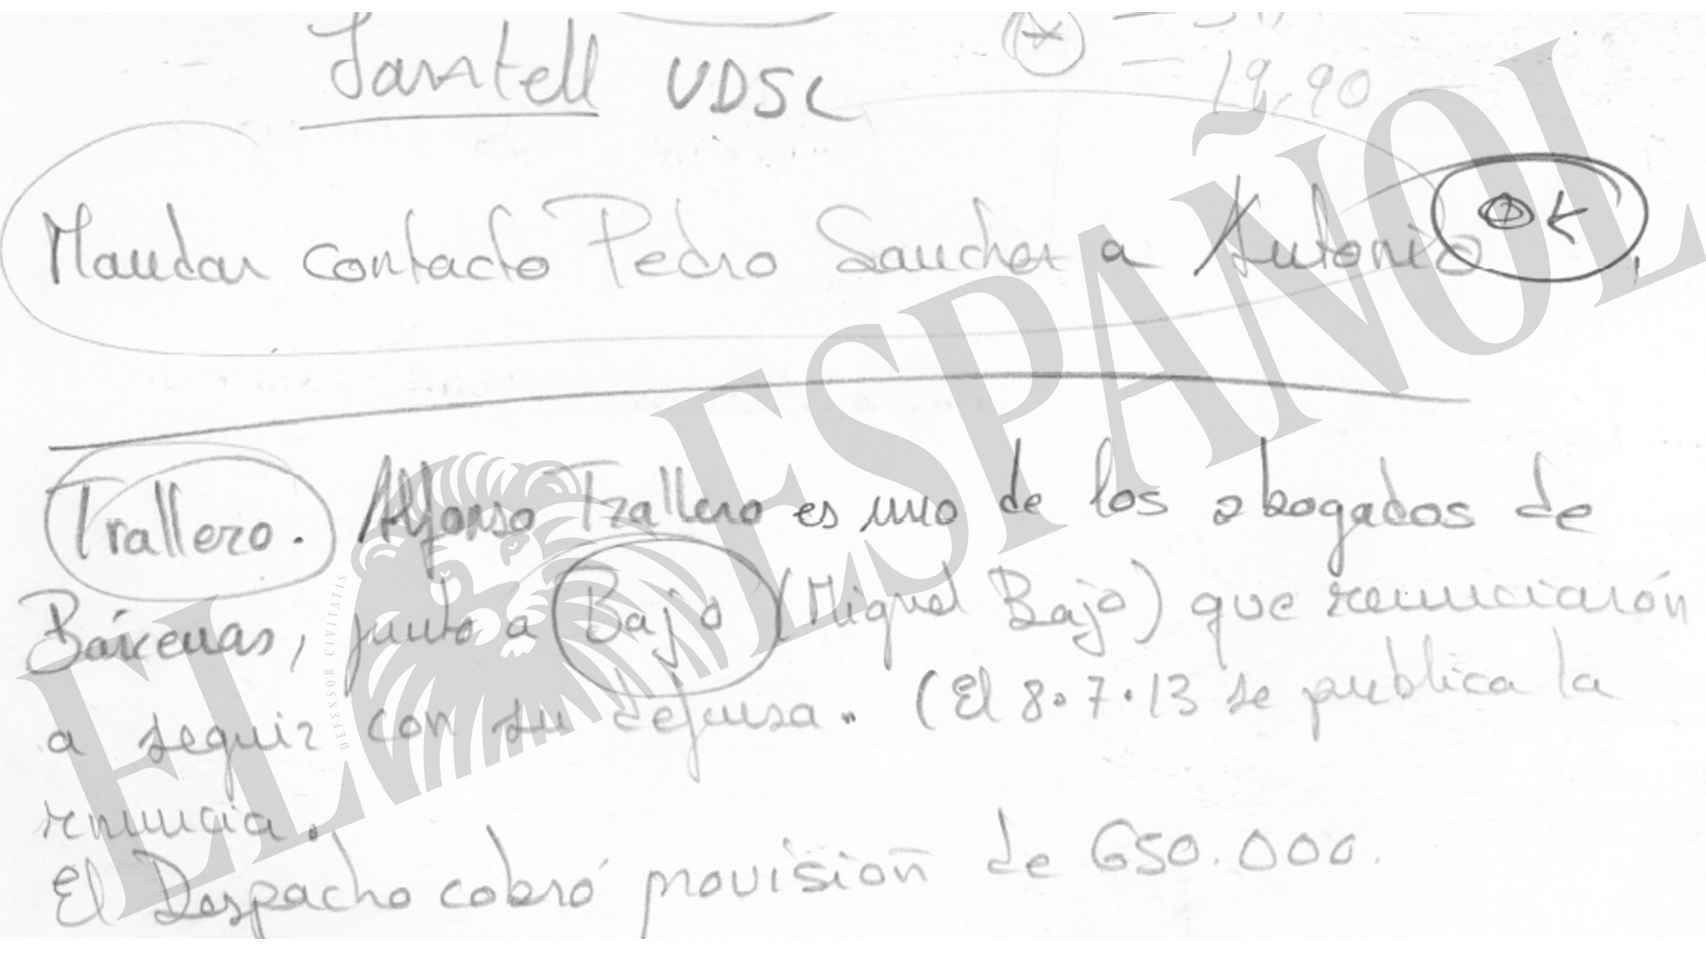 La nota escrita por Villarejo en julio de 2013: Mandar contacto Pedro Sánchez a Antonio.